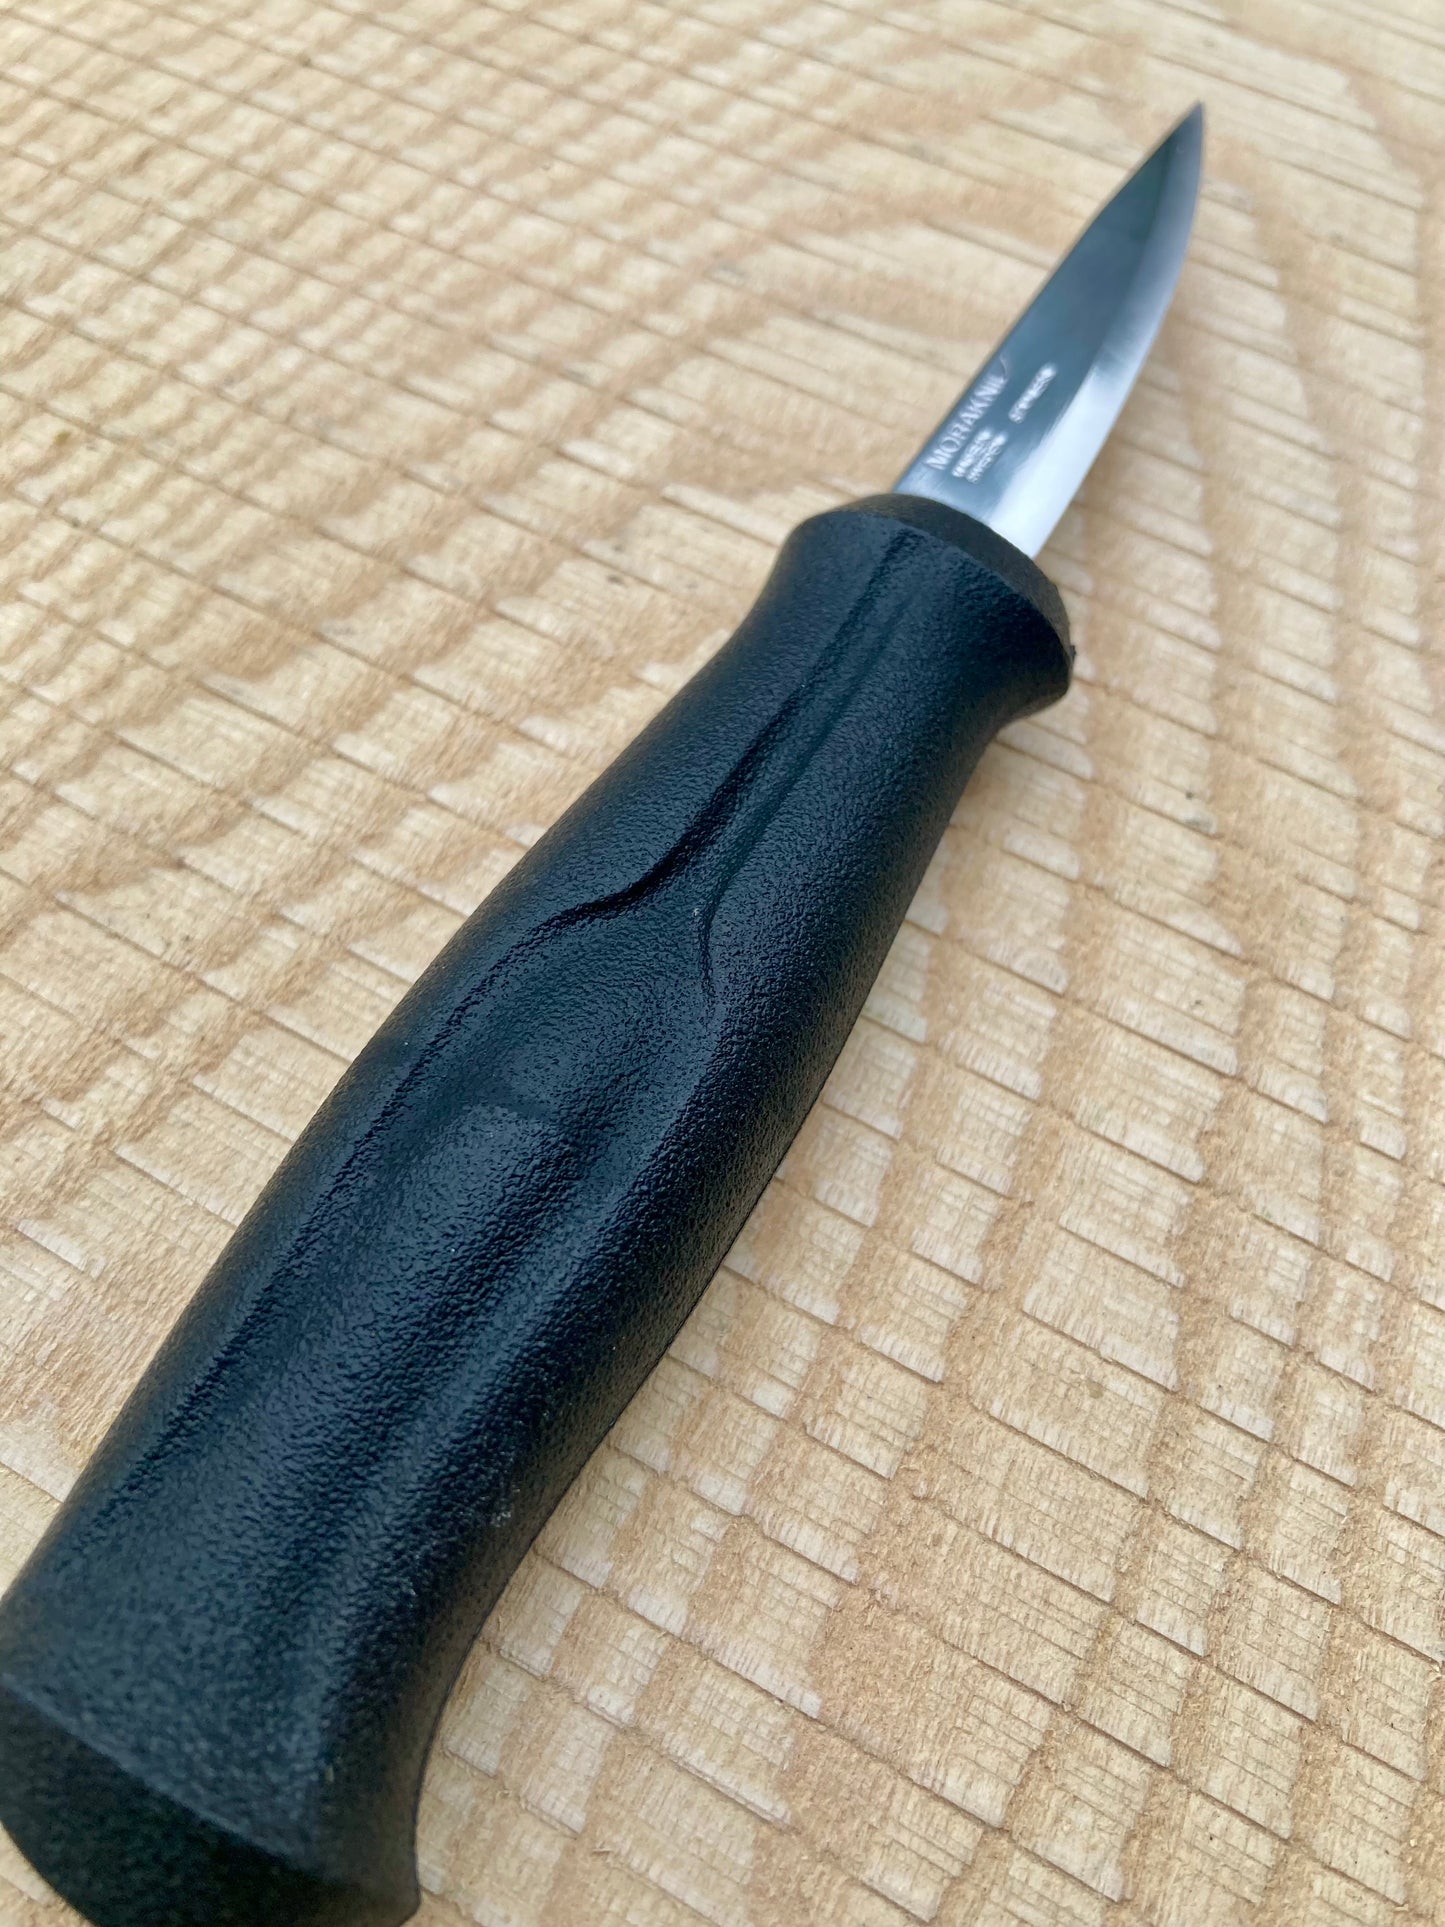 Mora - Basic Knife